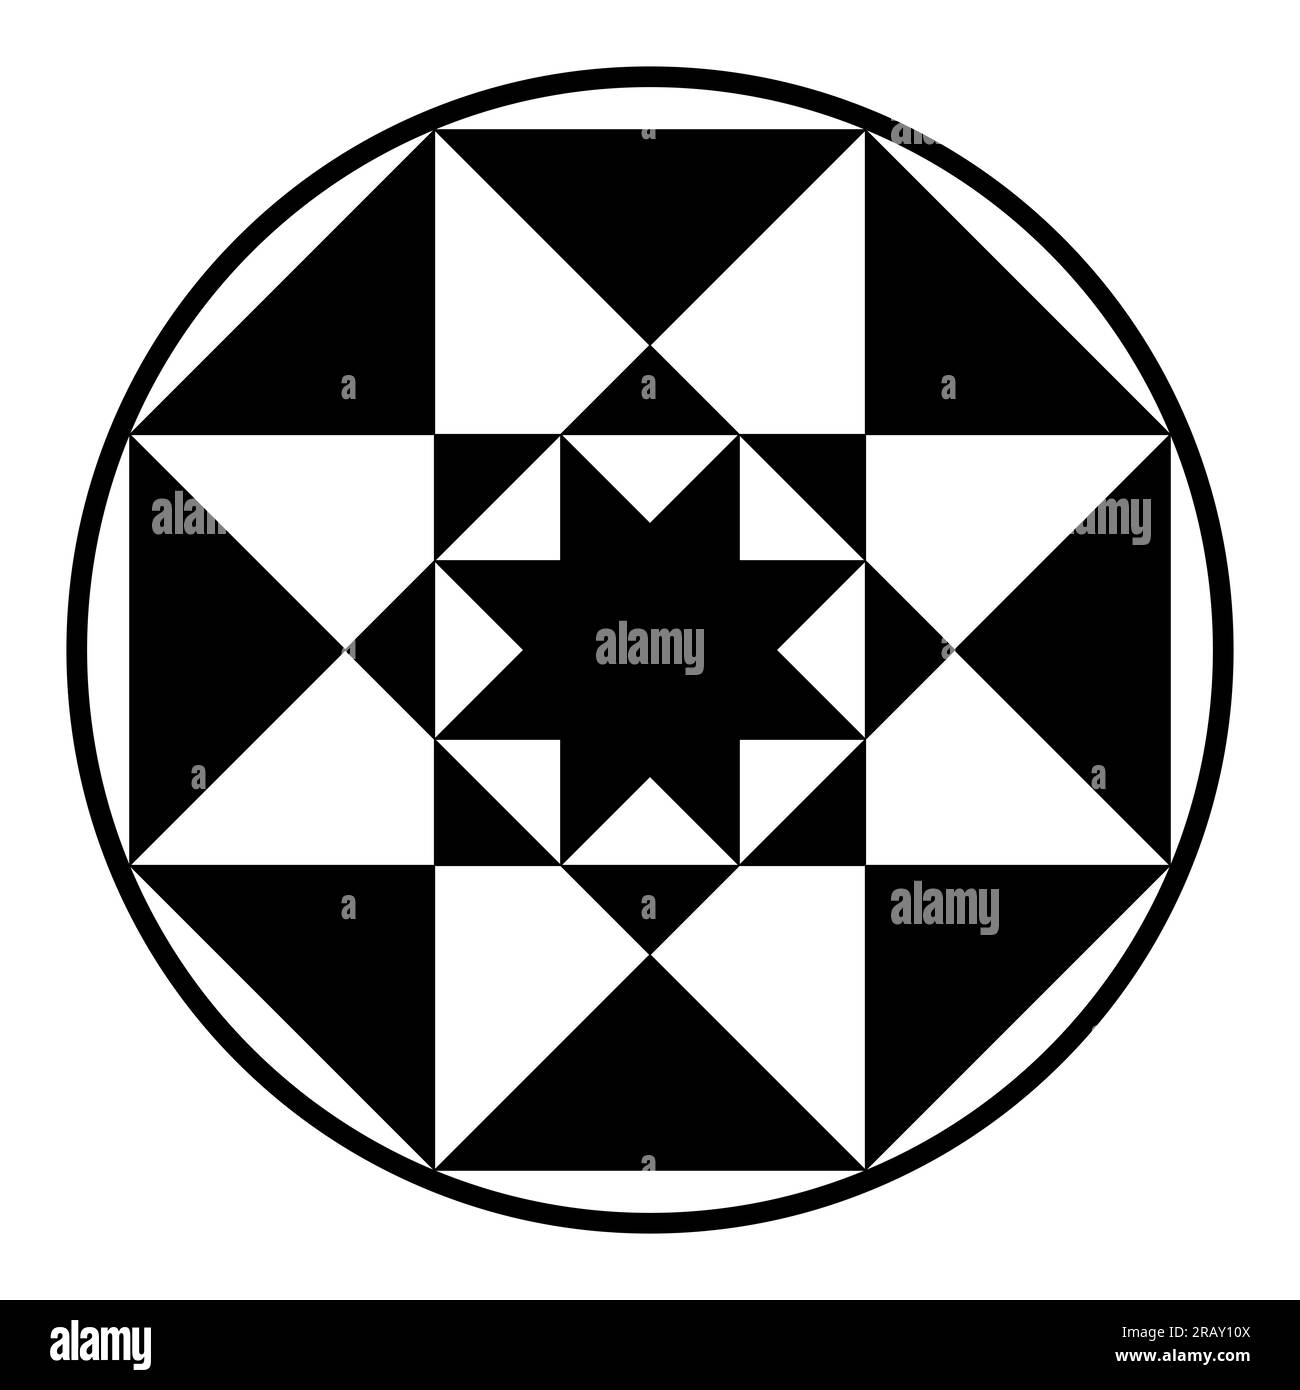 Reguläre Oktagrammsymbole in einem Kreisrahmen. Kleines Sternpolygon in einem großen, jeder mit acht Eckpunkten, umgeben von einem kreisförmigen Rahmen. Stockfoto